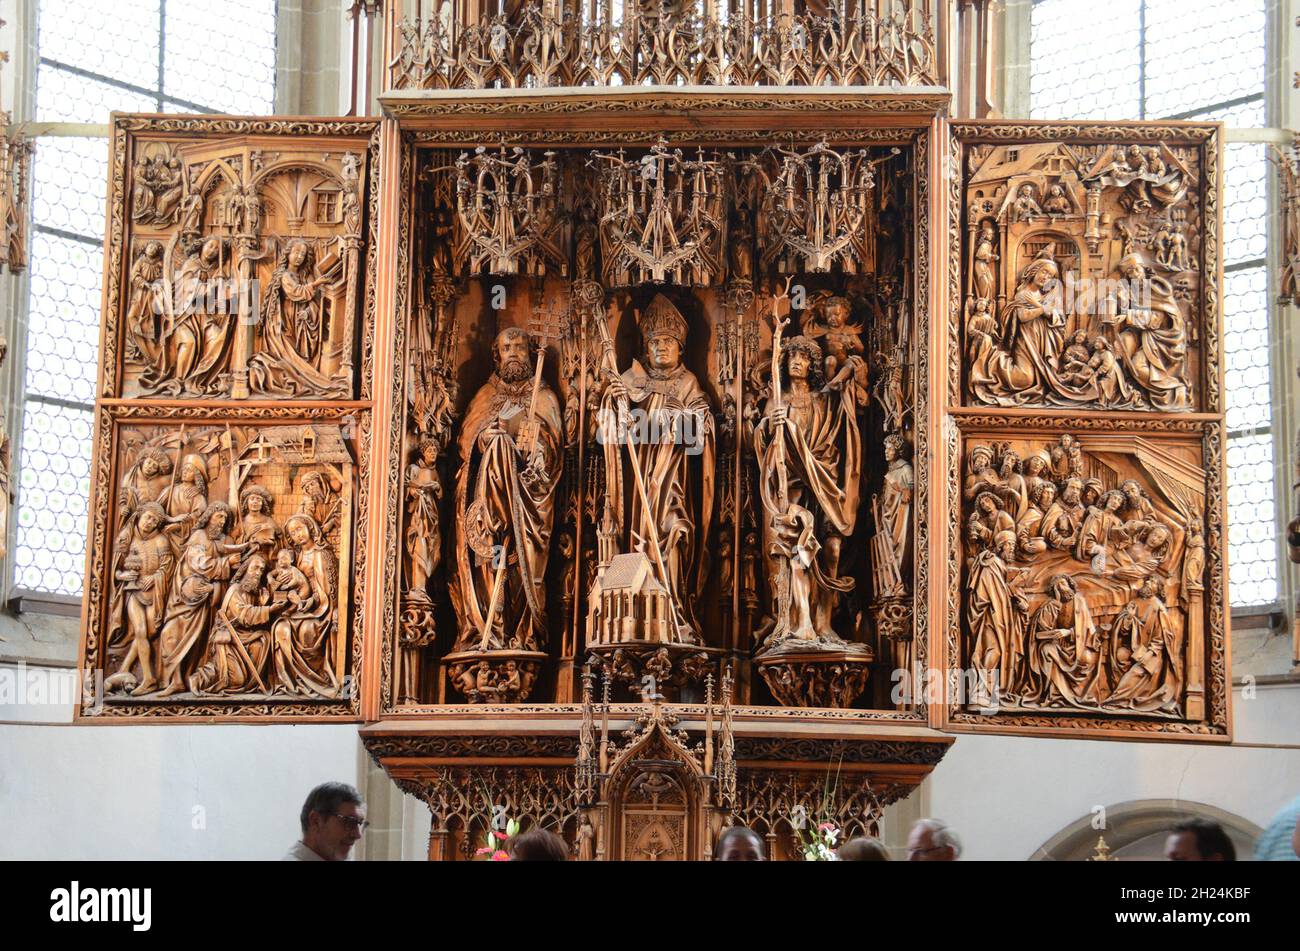 Der berühmte Flügelaltar en Kefermarkt, Österreich, Europa - el famoso altar alado en Kefermarkt, Austria, Europa Foto de stock